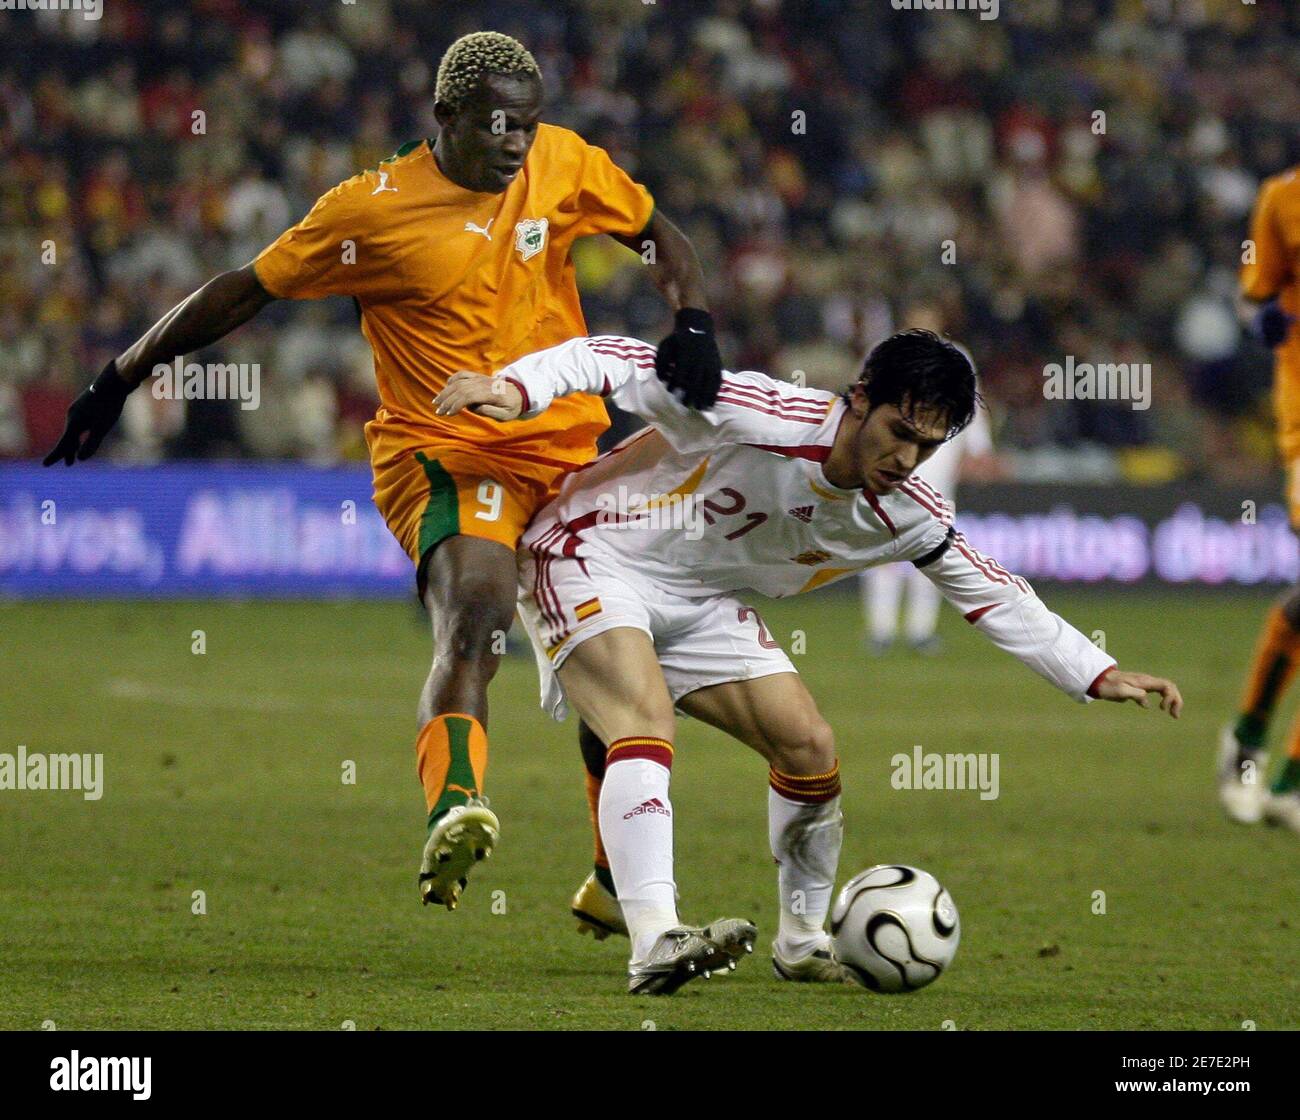 La spagnola Luis Garcia (R) combatte per la palla con l'arouna Kone della Costa d'Avorio durante la loro partita di calcio internazionale amichevole allo stadio Jose Zorrilla di Valladolid, in Spagna nord 1 marzo 2006. REUTERS/Felix Ordonez Foto Stock